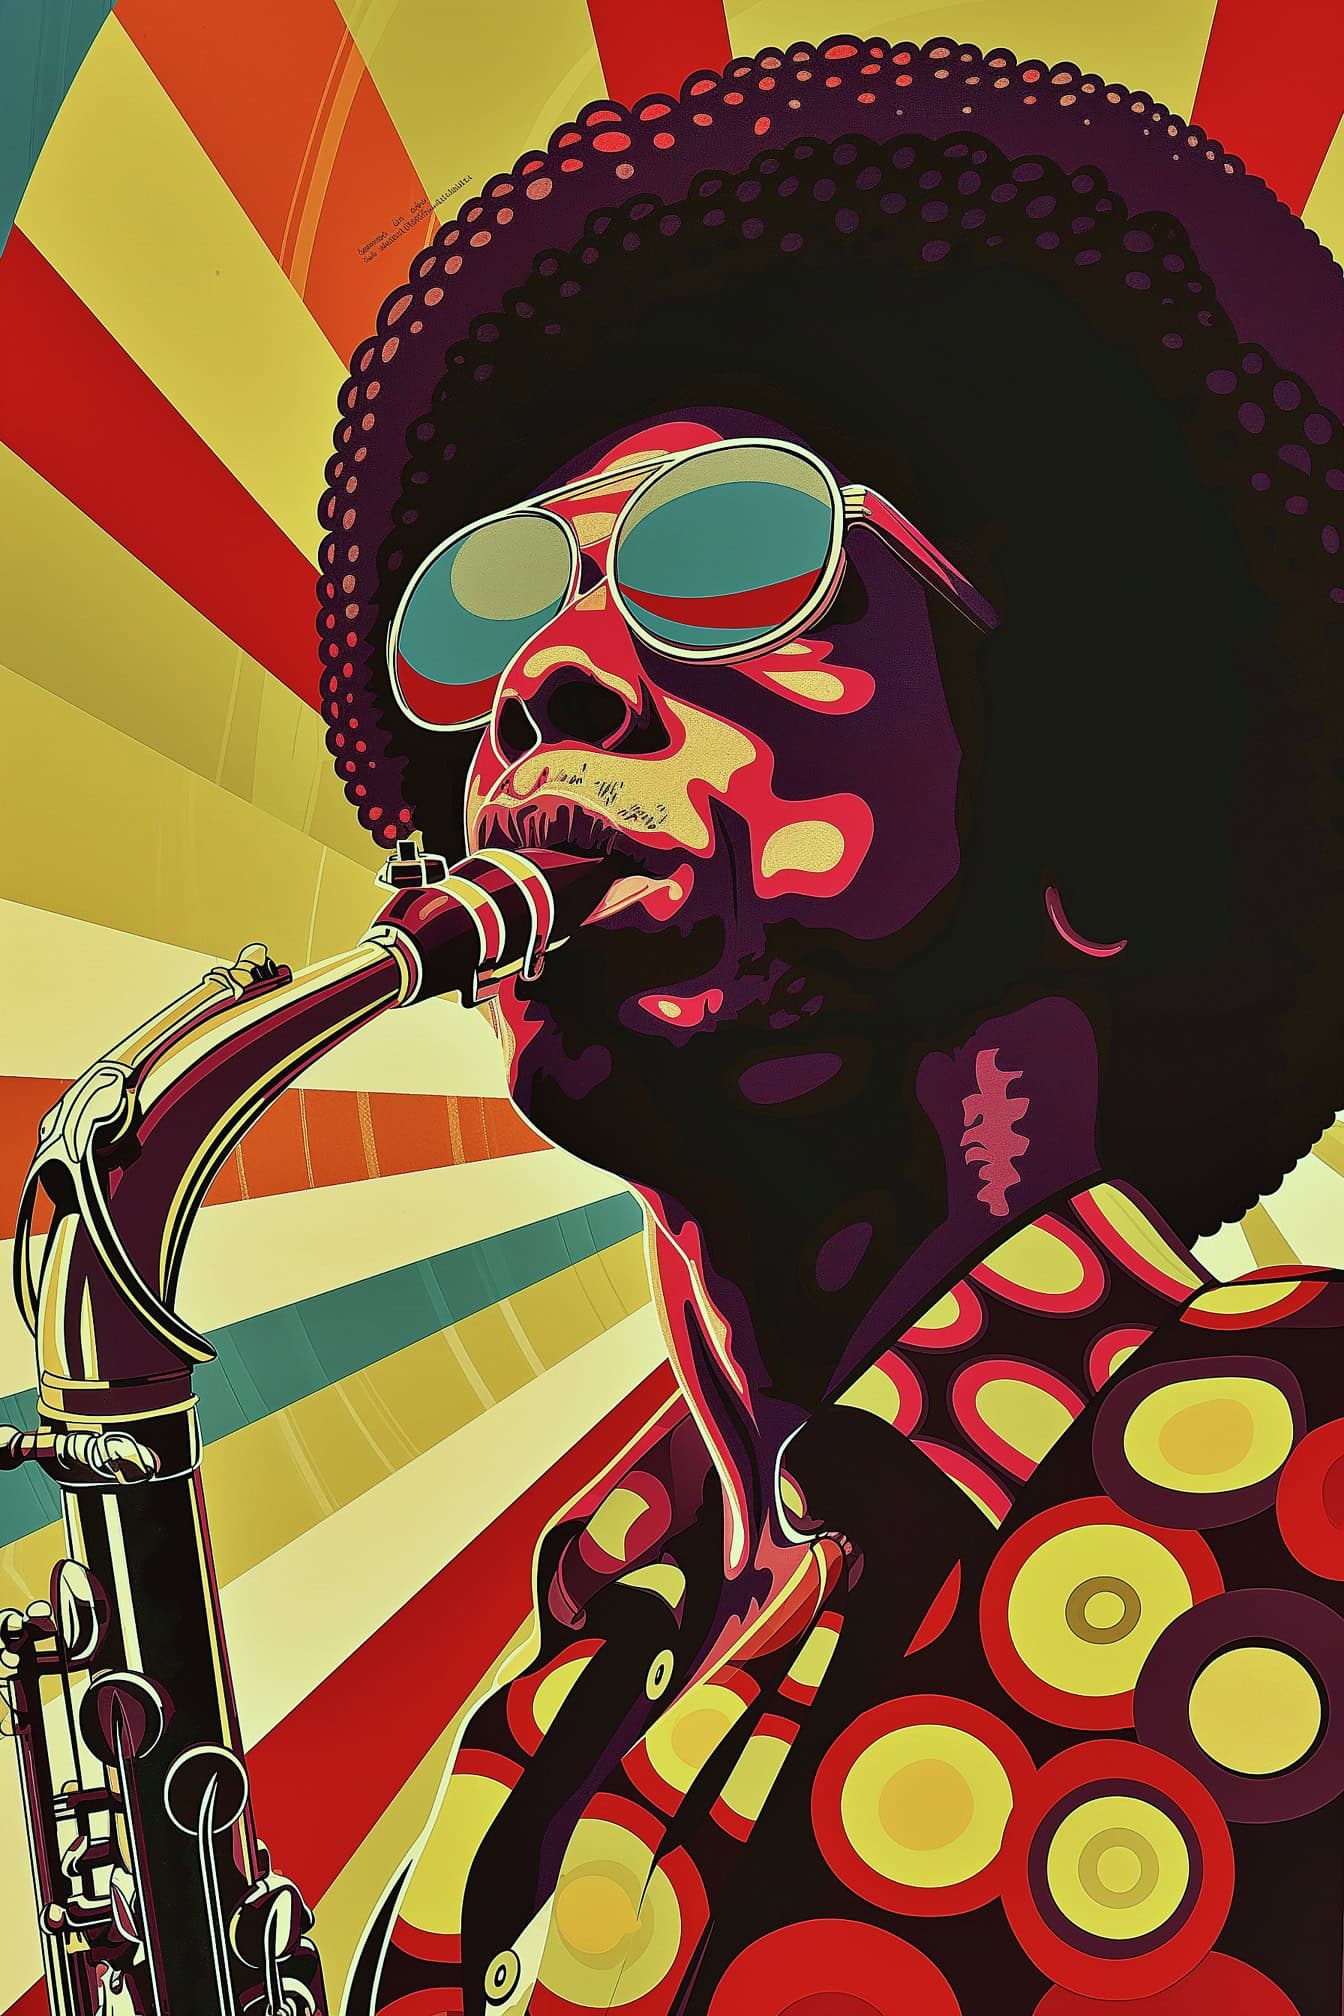 아프리카 헤어스타일을 한 아프리카계 미국인 재즈 뮤지션이 선글라스를 끼고 색소폰을 연주하는 복고풍 포스터